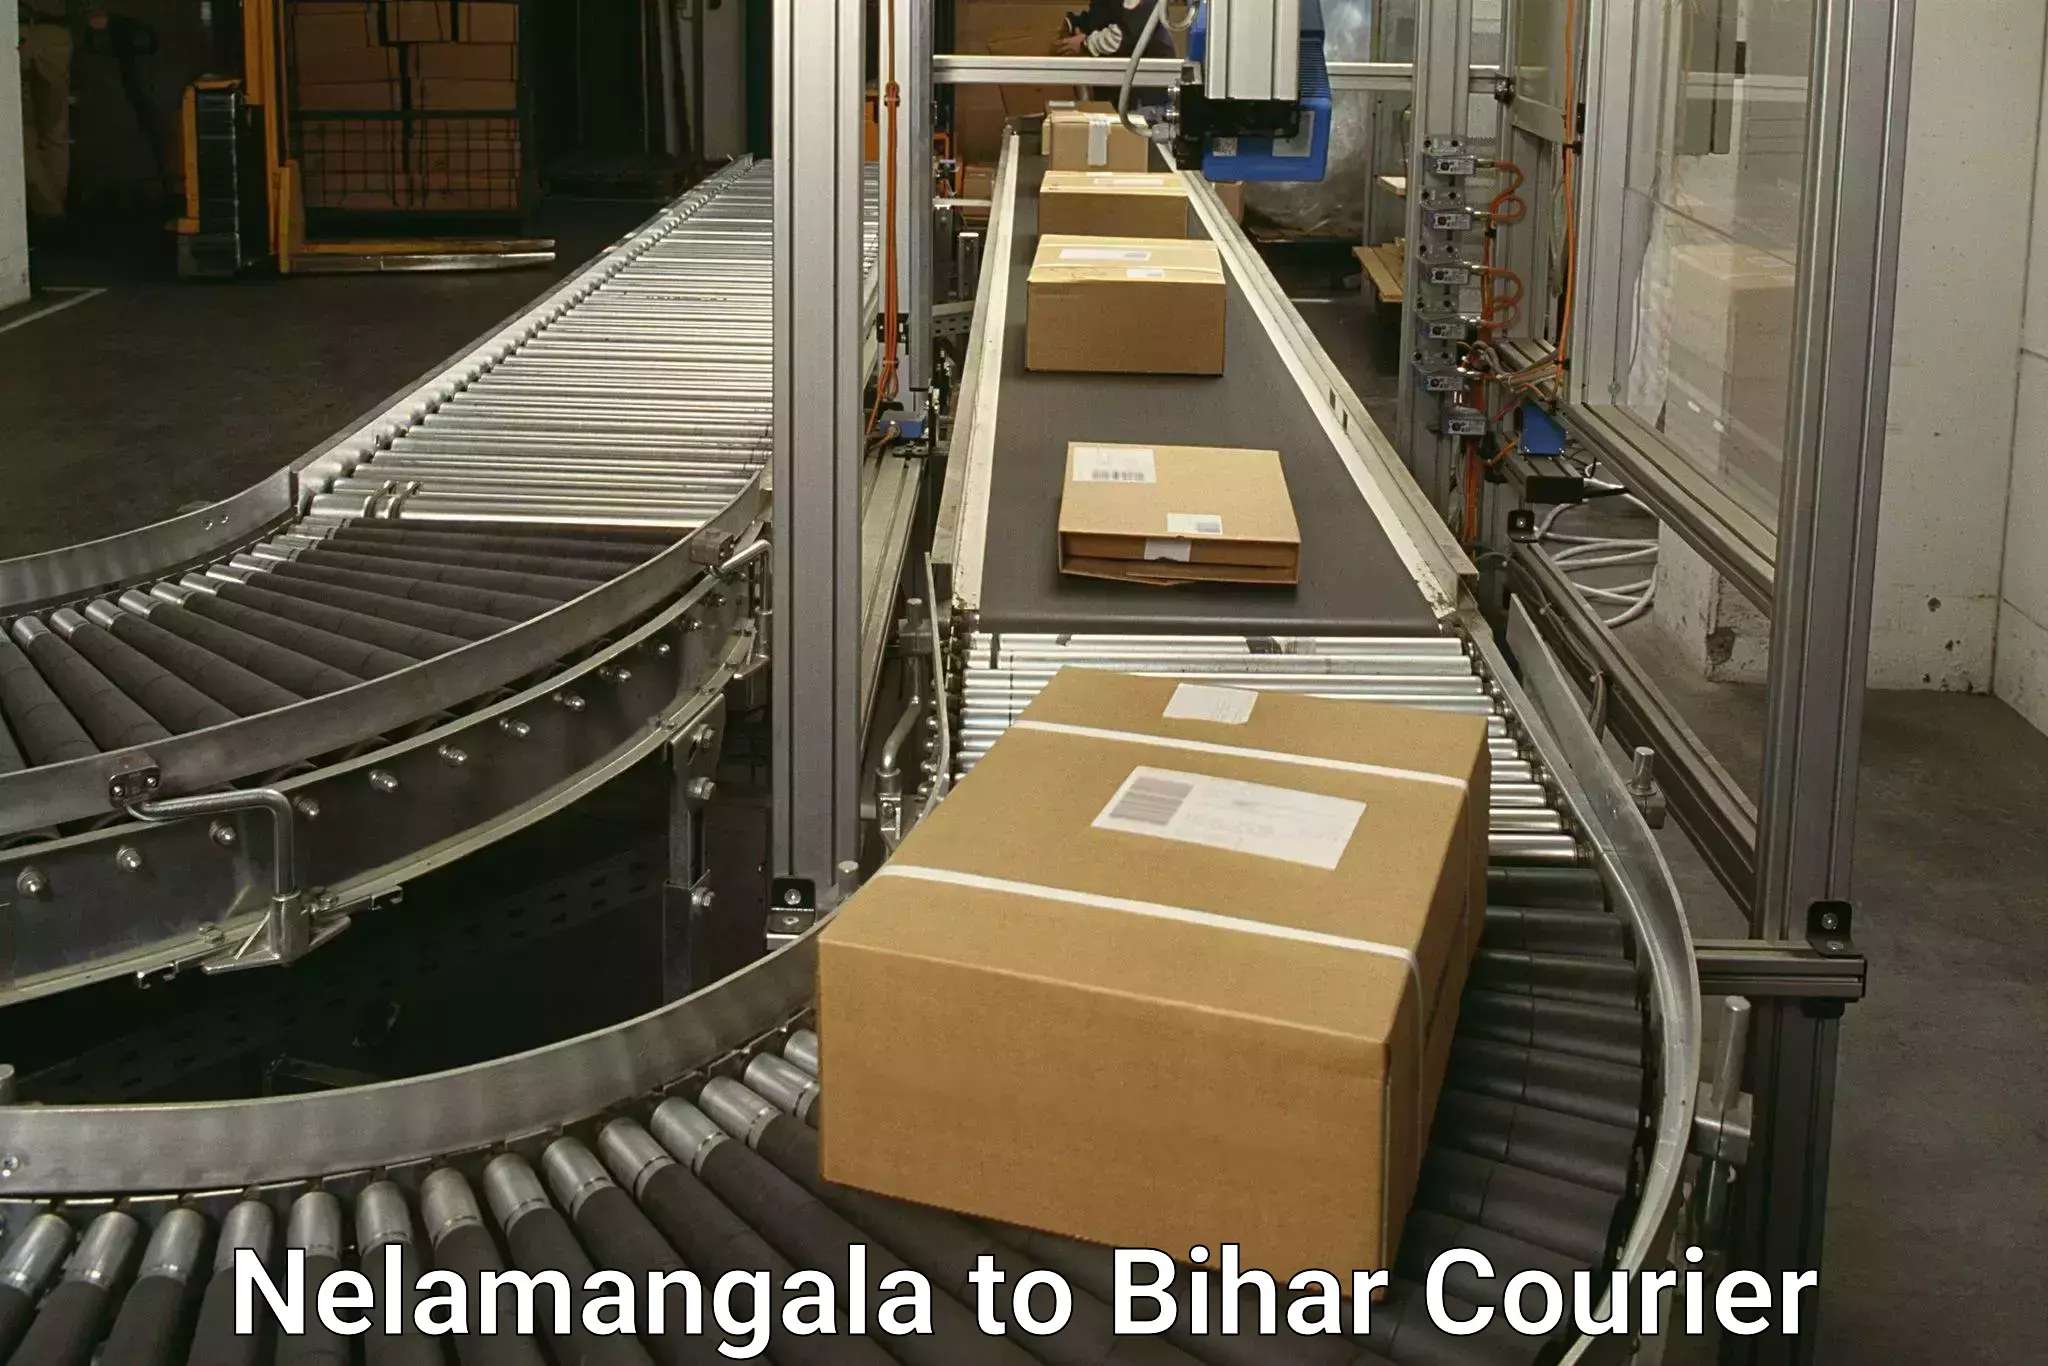 Expedited shipping methods Nelamangala to Aurangabad Bihar